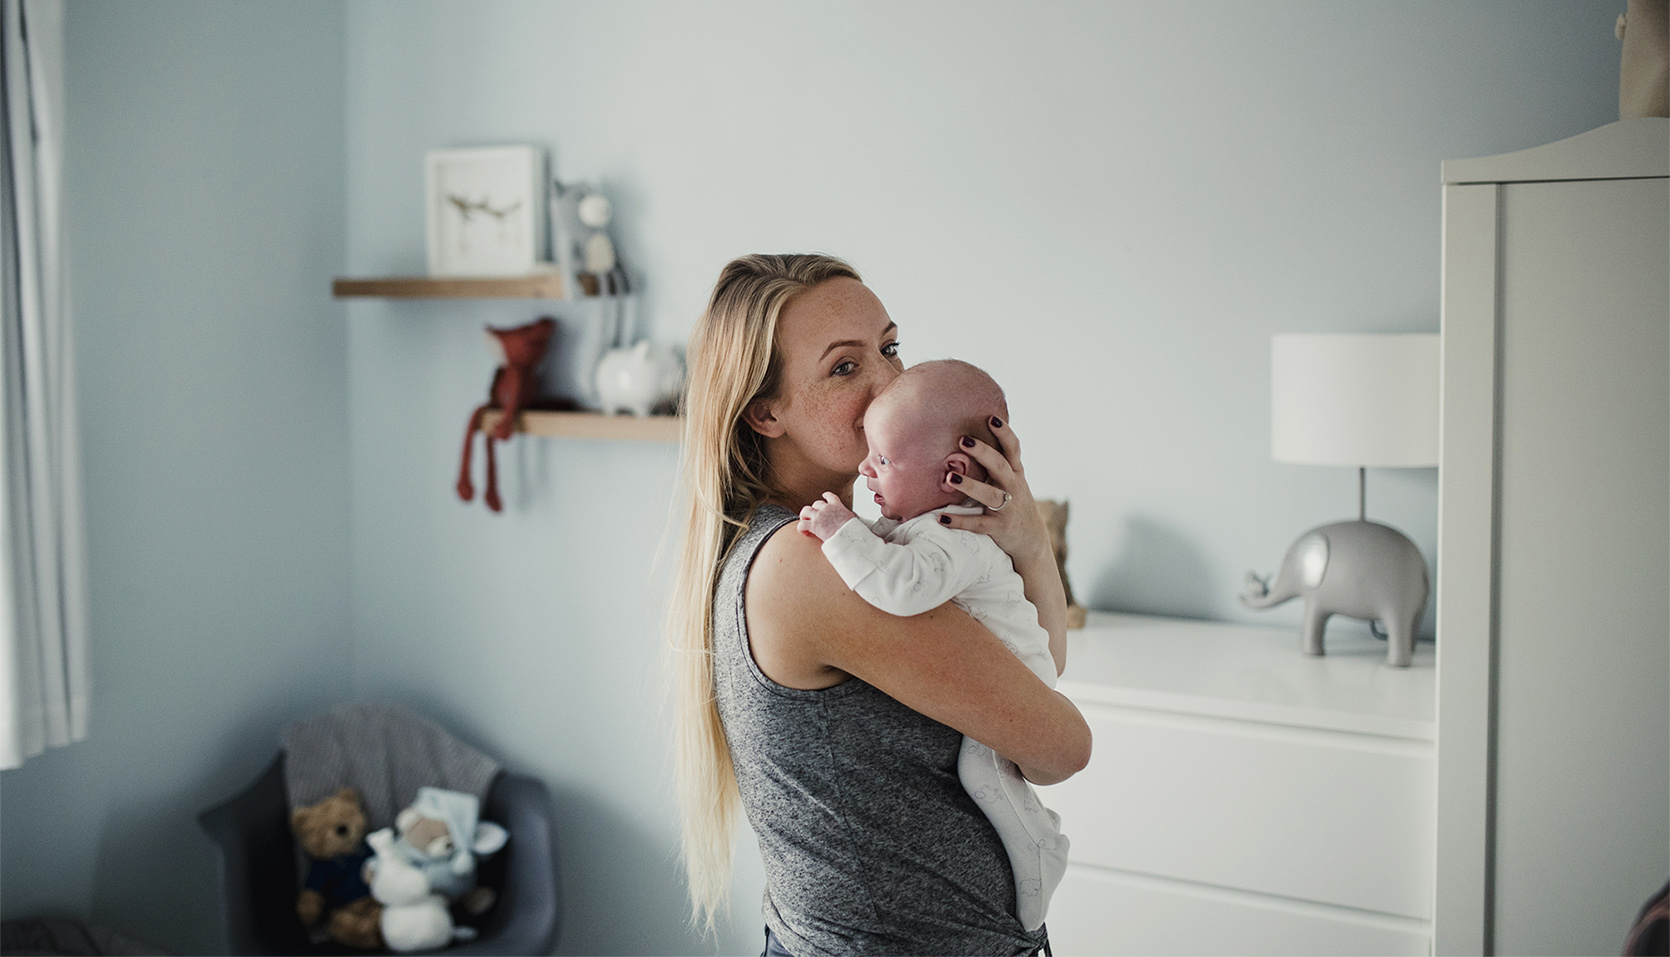 Czkawka u noworodka - przyczyny i zapobieganie/fot. Getty Images